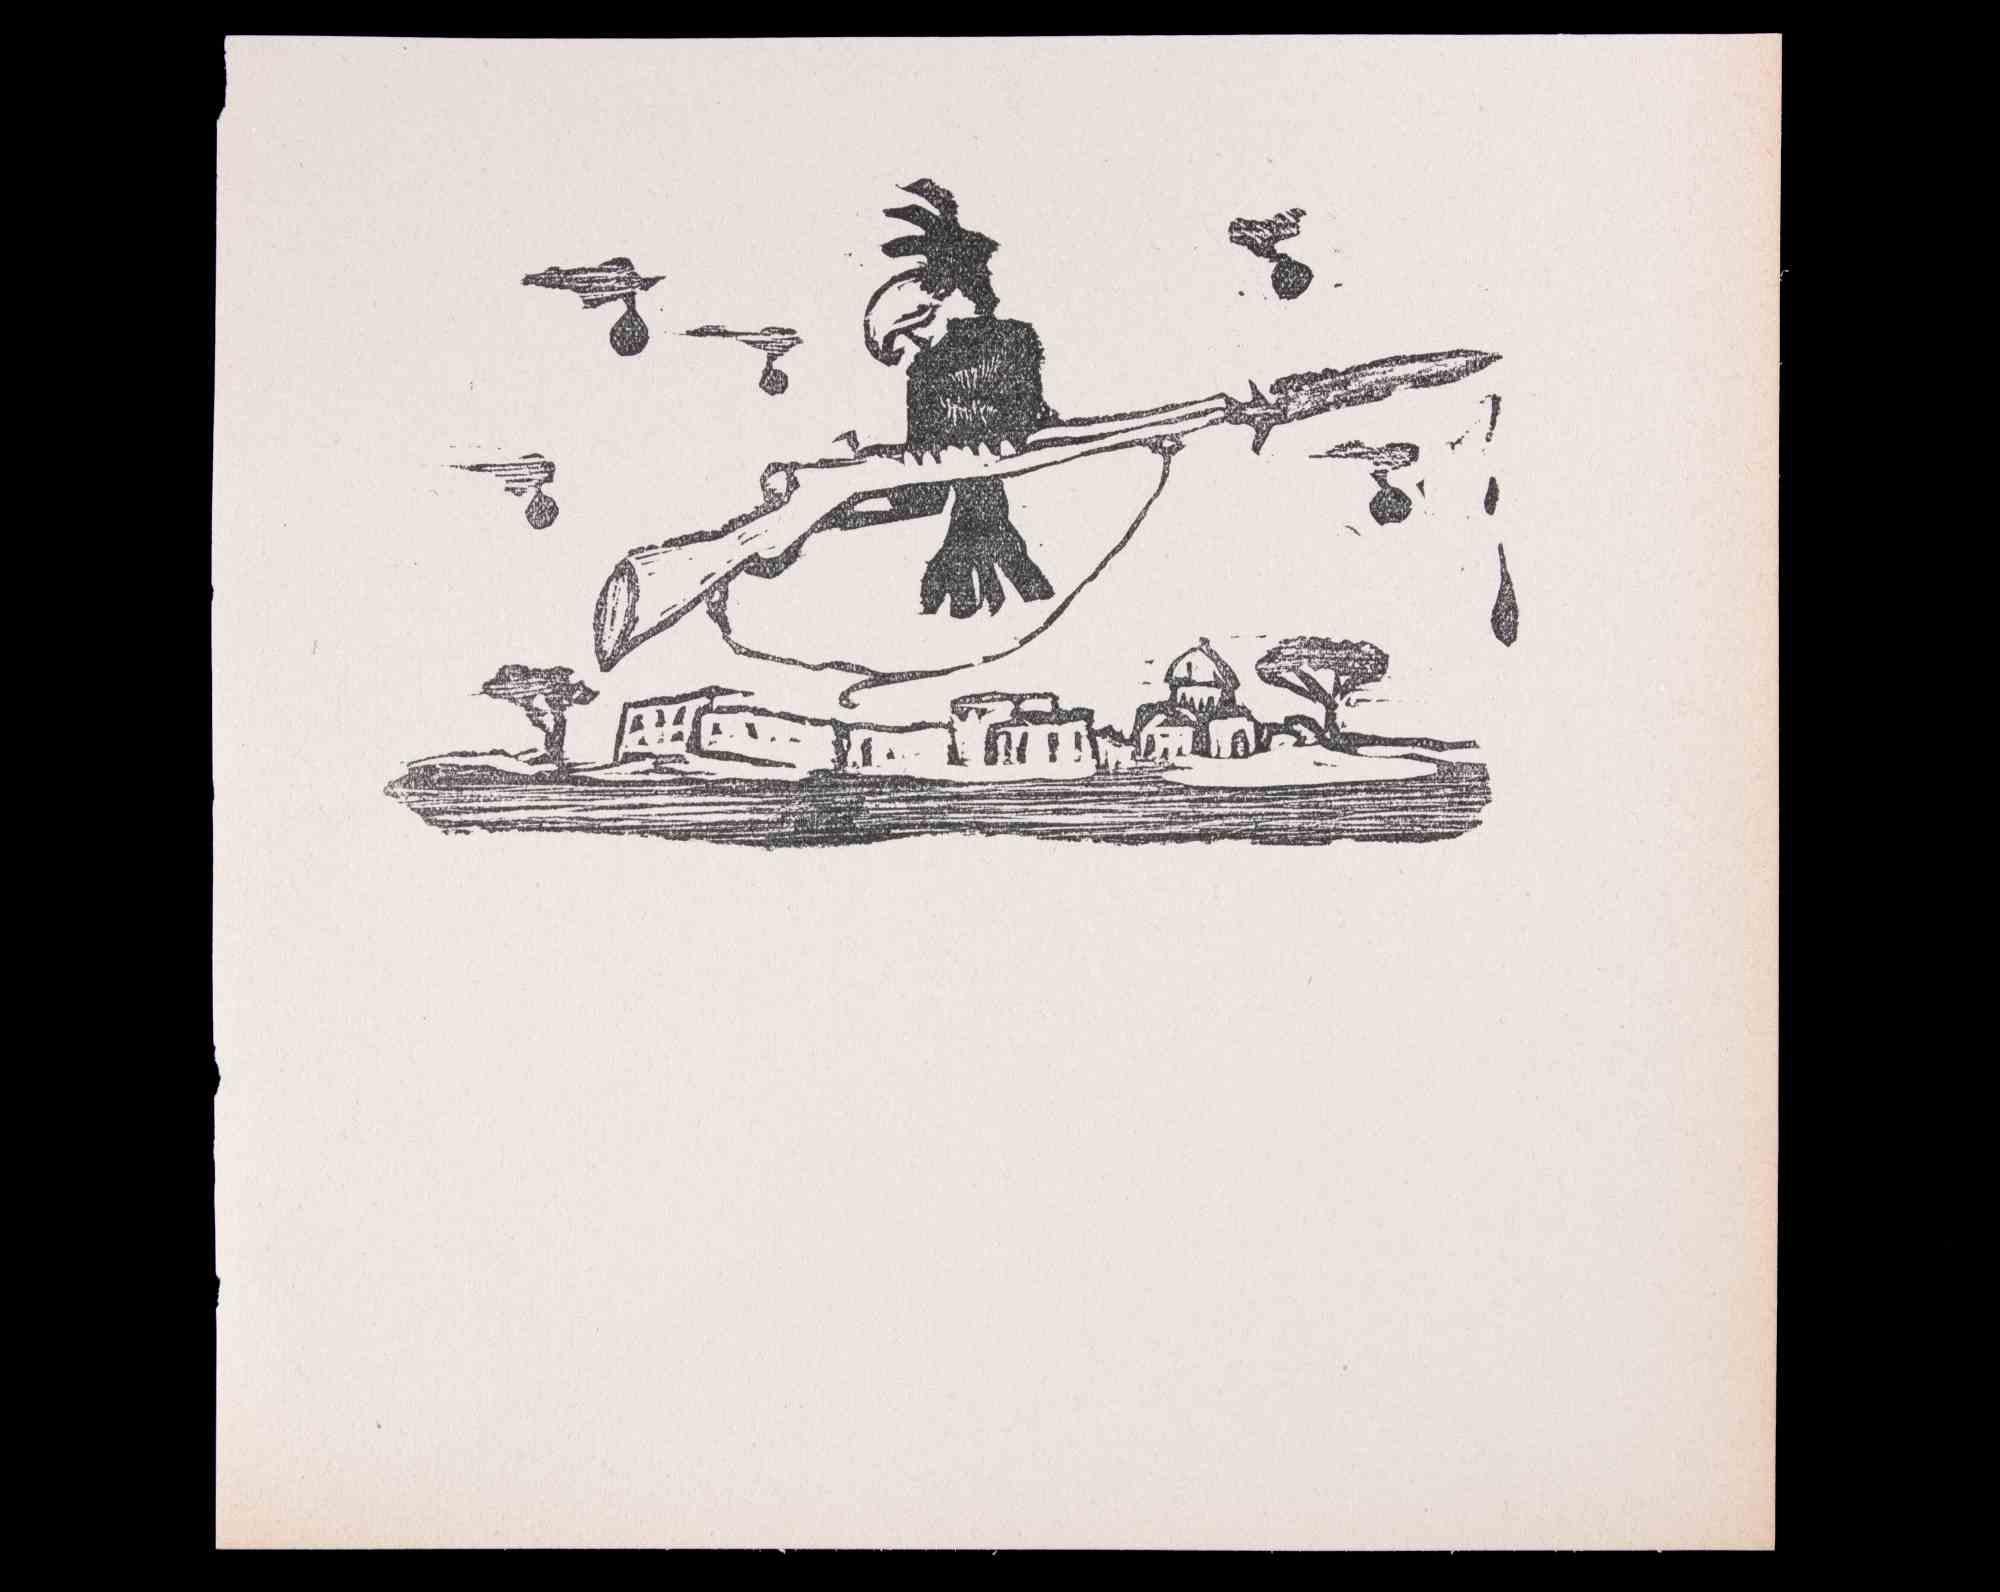 The Gunner Bird - Linocut by Mino Maccari - 1951